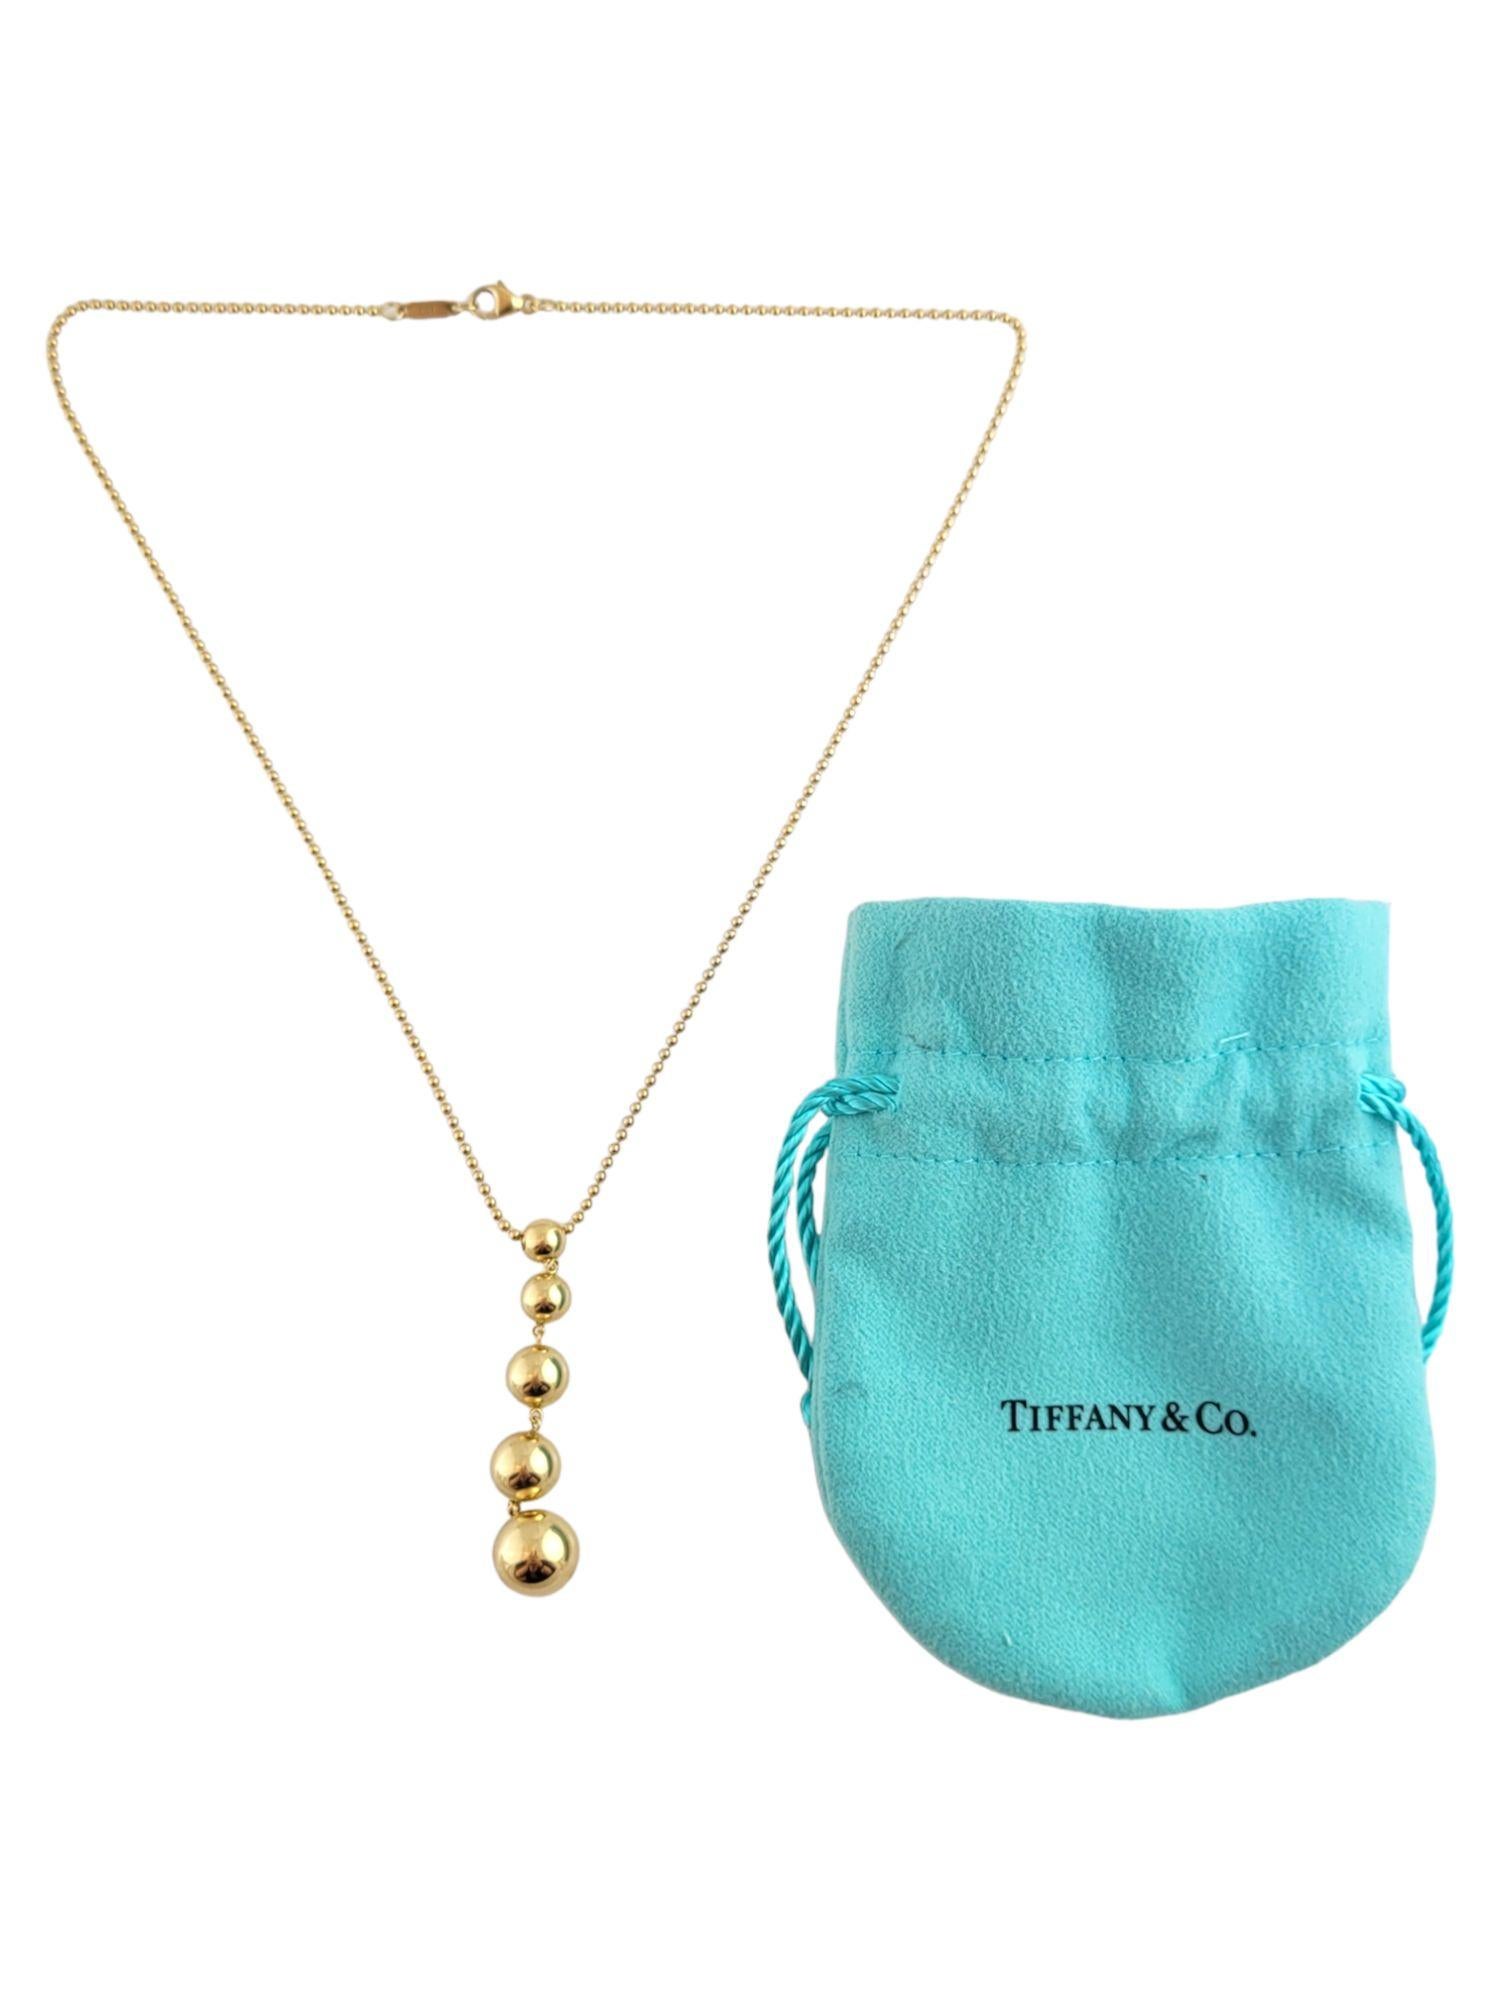 Ce magnifique collier à perles graduées de Tiffany & Co est réalisé en or jaune 18 carats !

Taille : 49.3mm X 10.3mm X 10.3mm

Longueur de la chaîne : 16 1/4